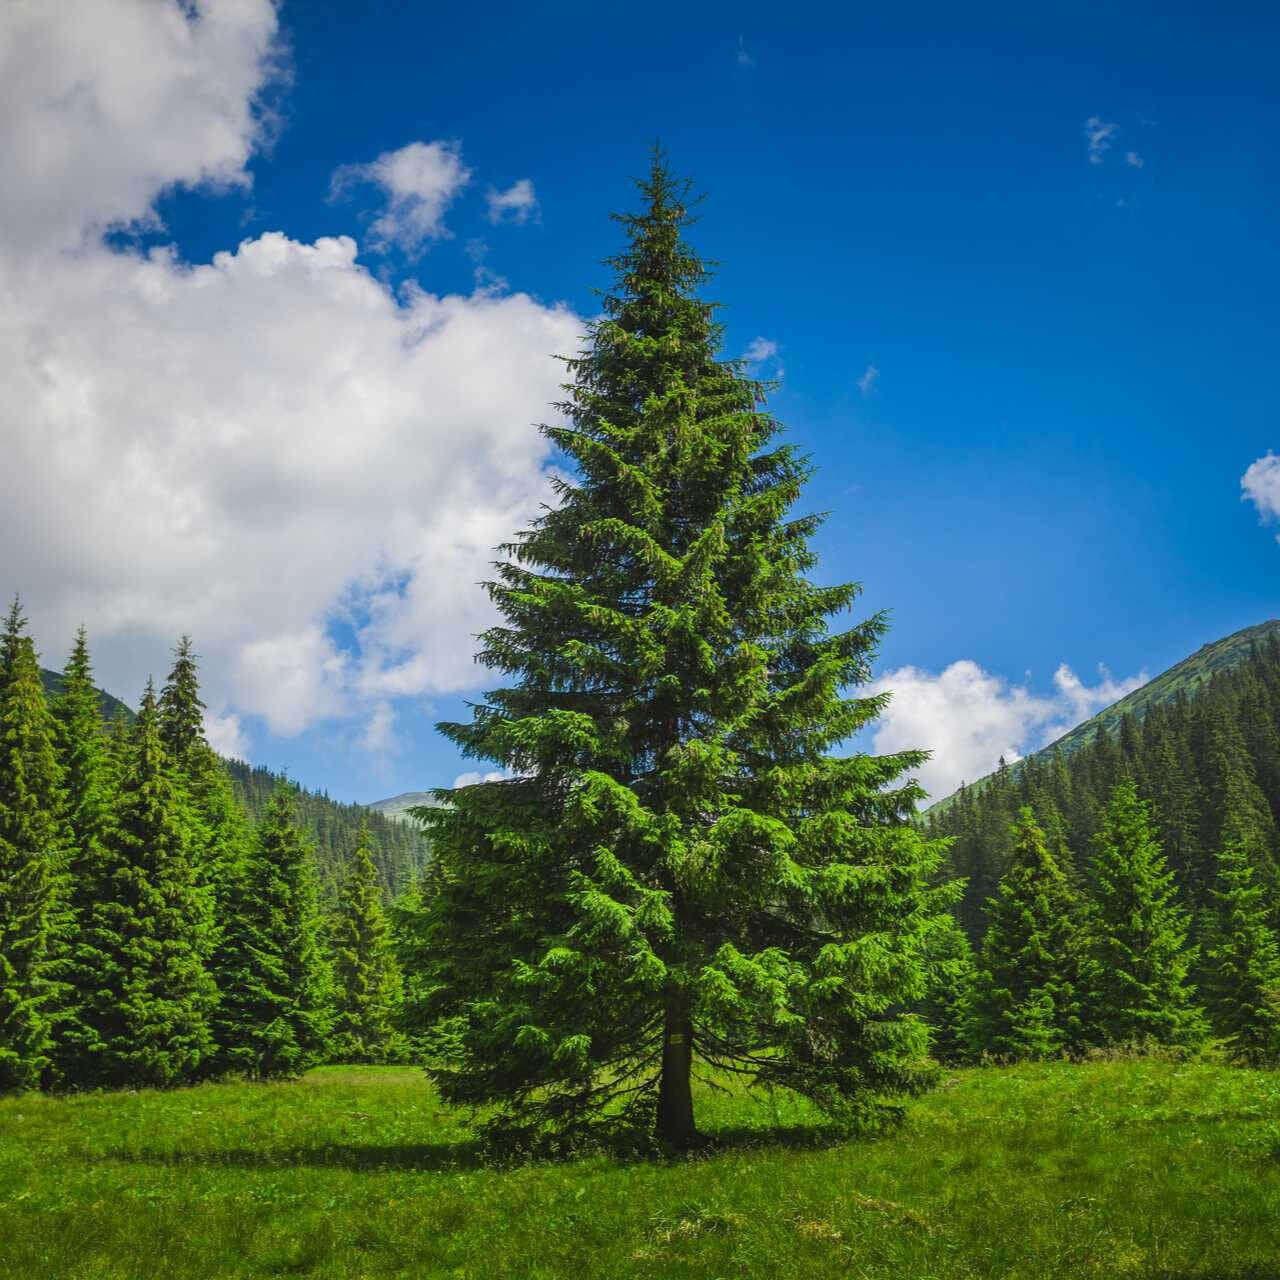 Loblolly Pine Tree For Sale  Buy 1, Get 1 Free – TN Nursery